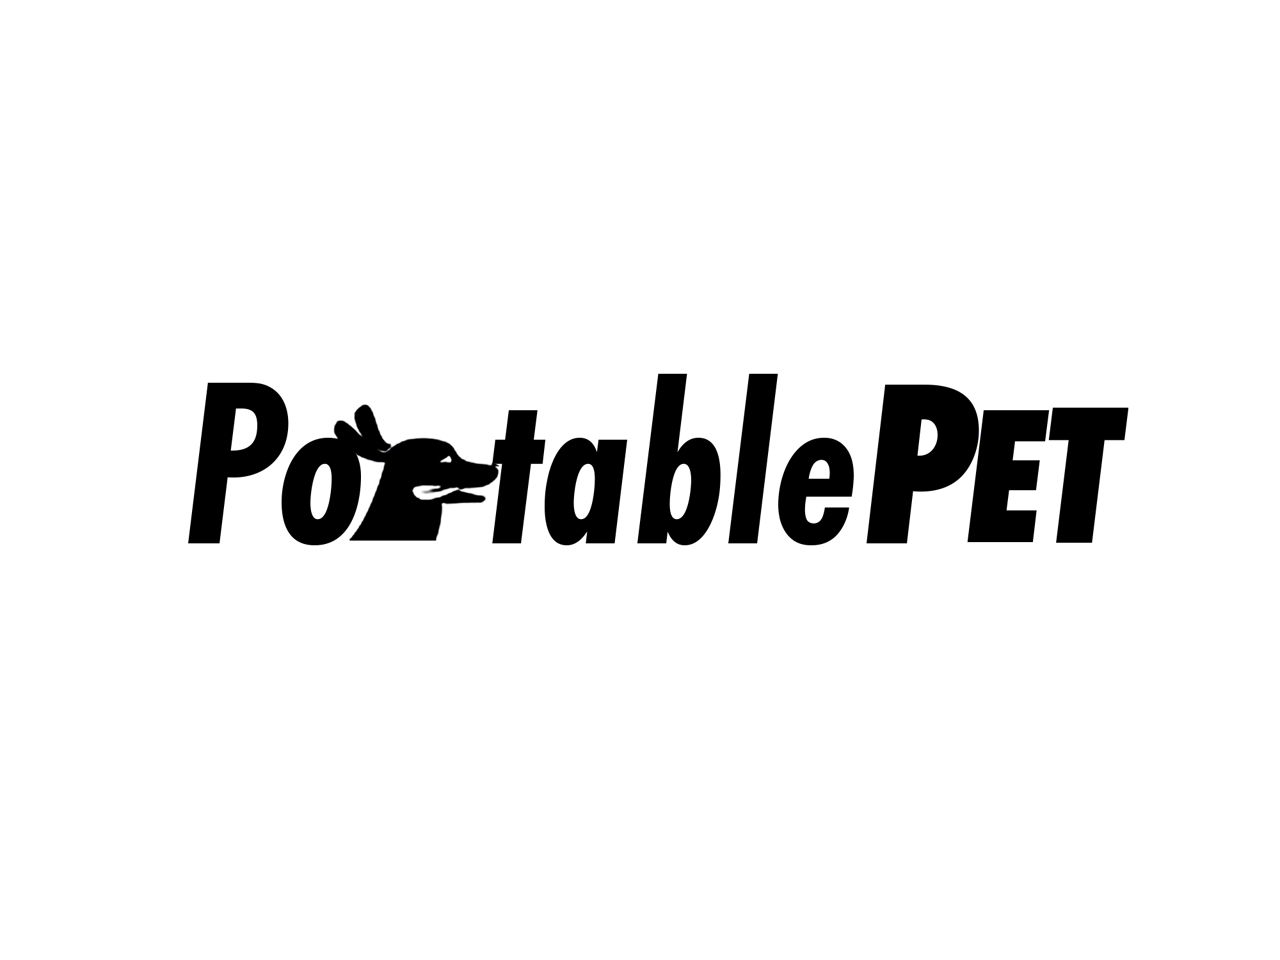 PortablePET Parts